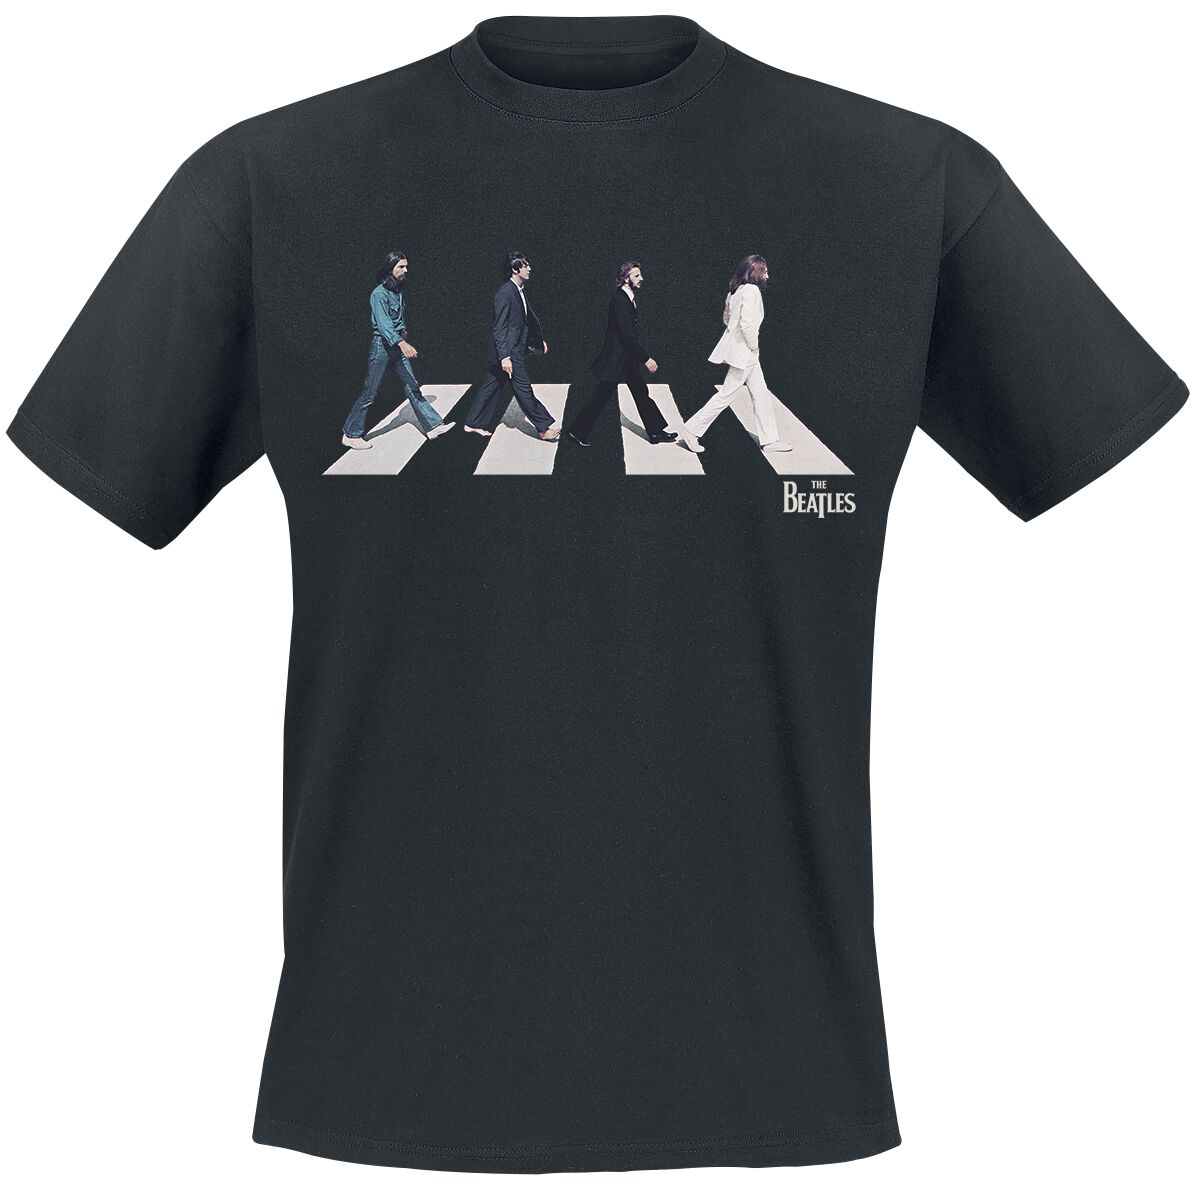 The Beatles T-Shirt - Abbey Road Silhouette - S bis 3XL - für Männer - Größe 3XL - schwarz  - Lizenziertes Merchandise!